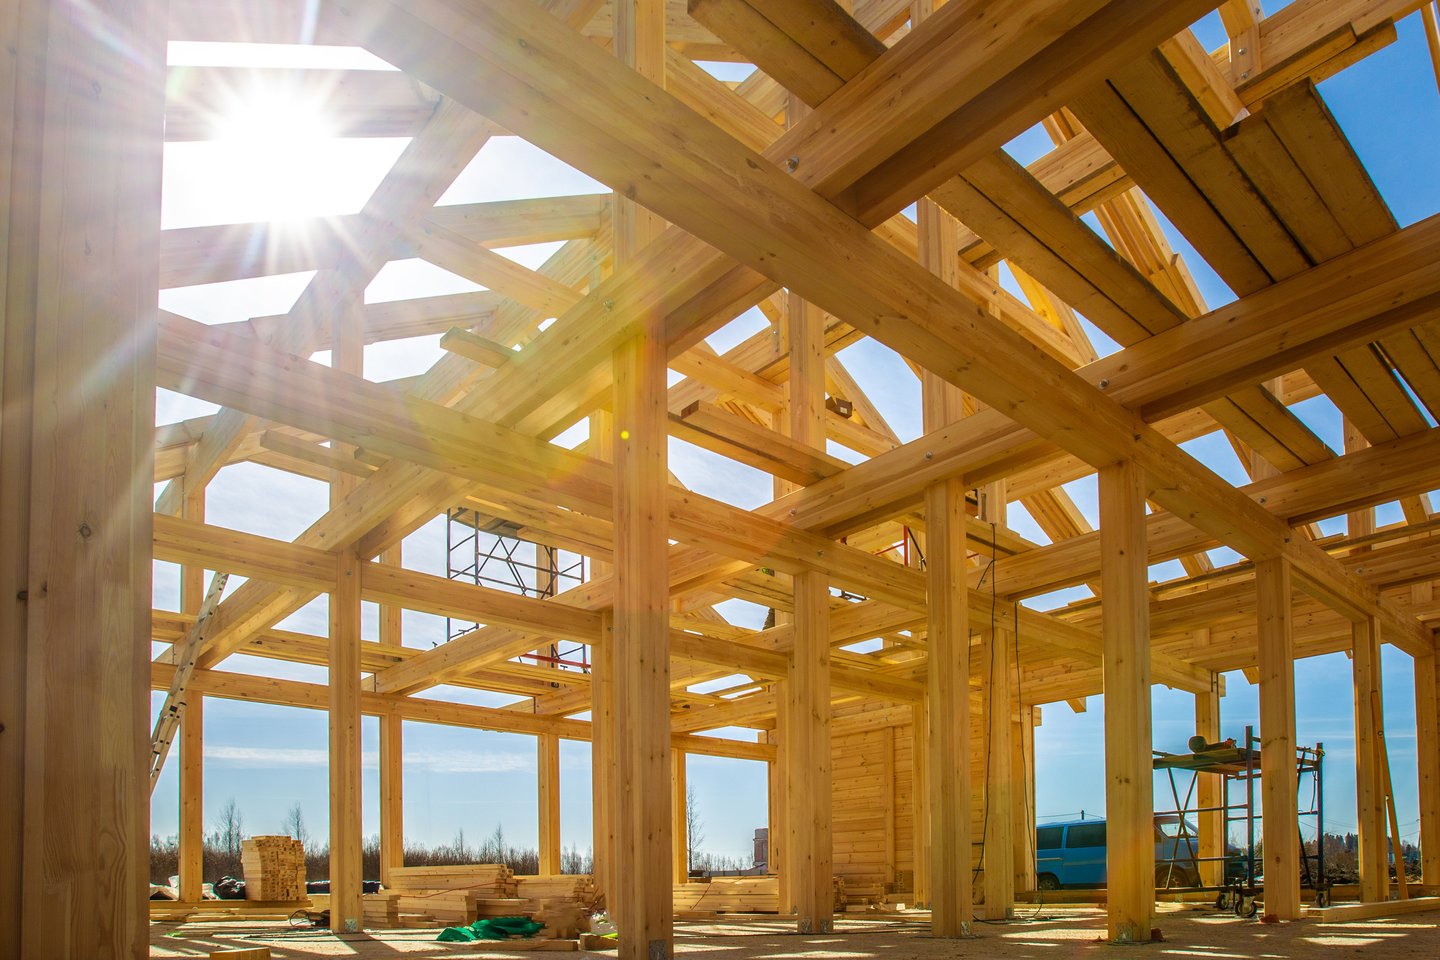 Inovacijoms atviros šalys gręžiasi tvaresnės statybinės medžiagos link – betoną ir plieną keičia mediena.<br>123 rf nuotr.